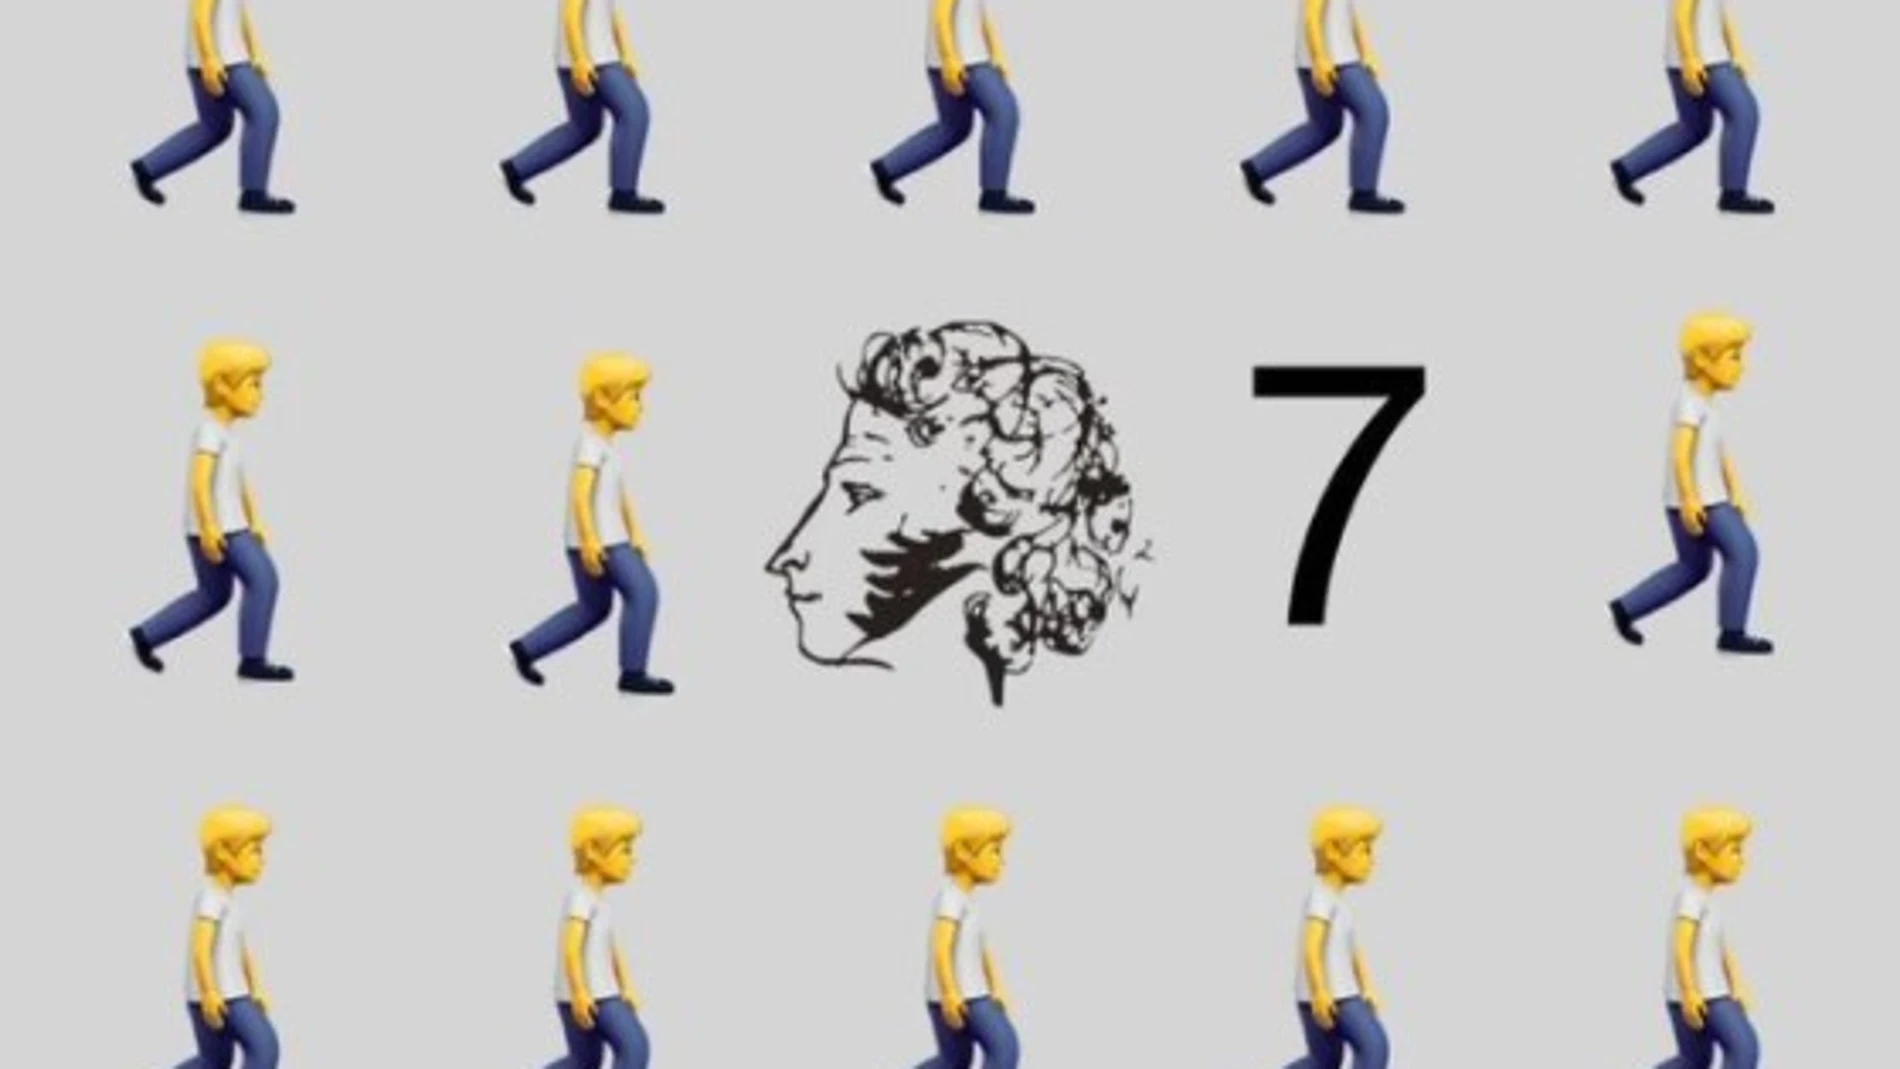 Imagen del poeta ruso Pushkin comenzó a difundirse en las redes sociales, junto a un número siete y filas del emoticono de una persona caminando